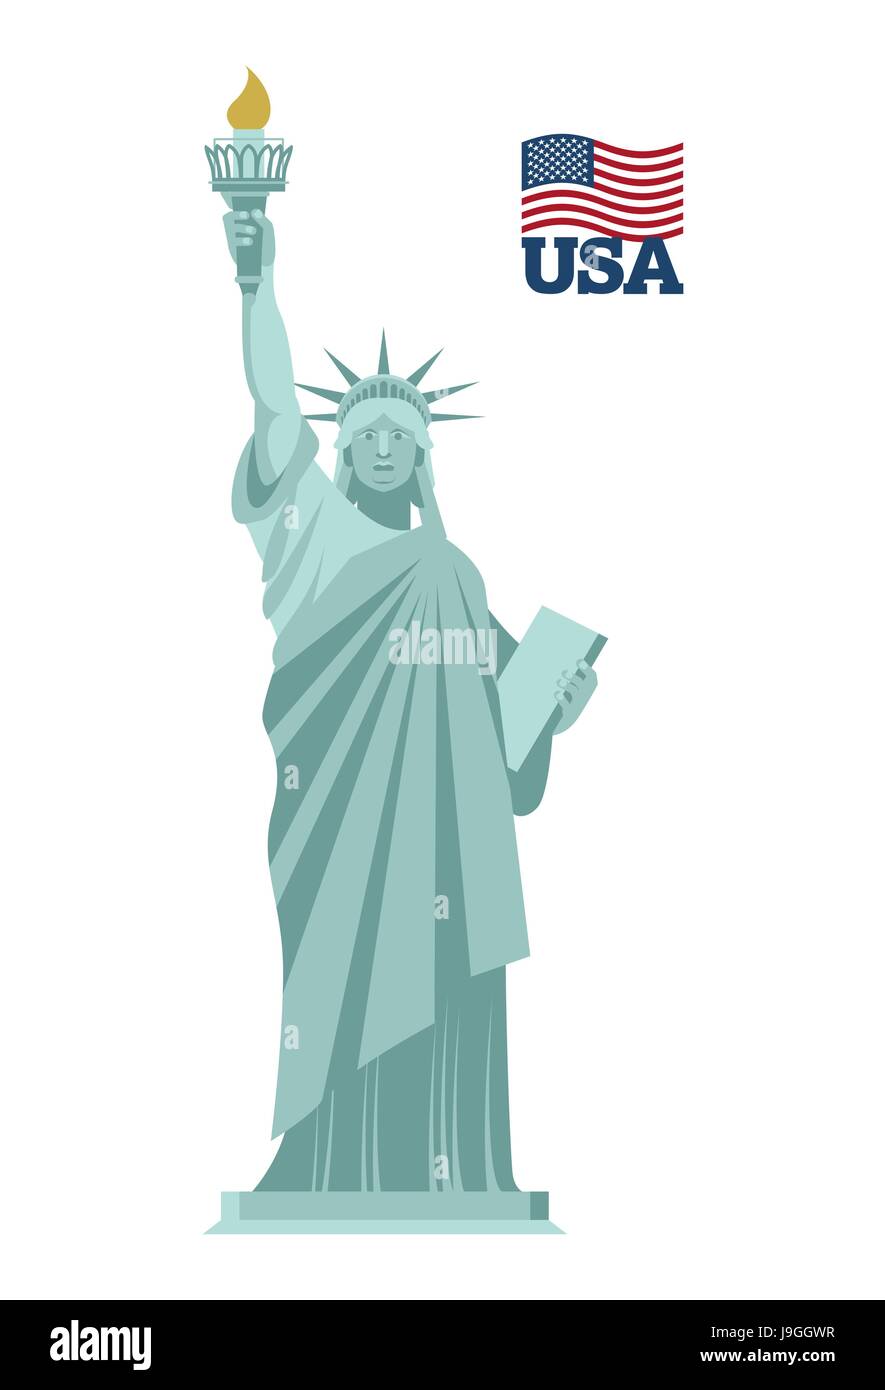 Национальный символ США статуя